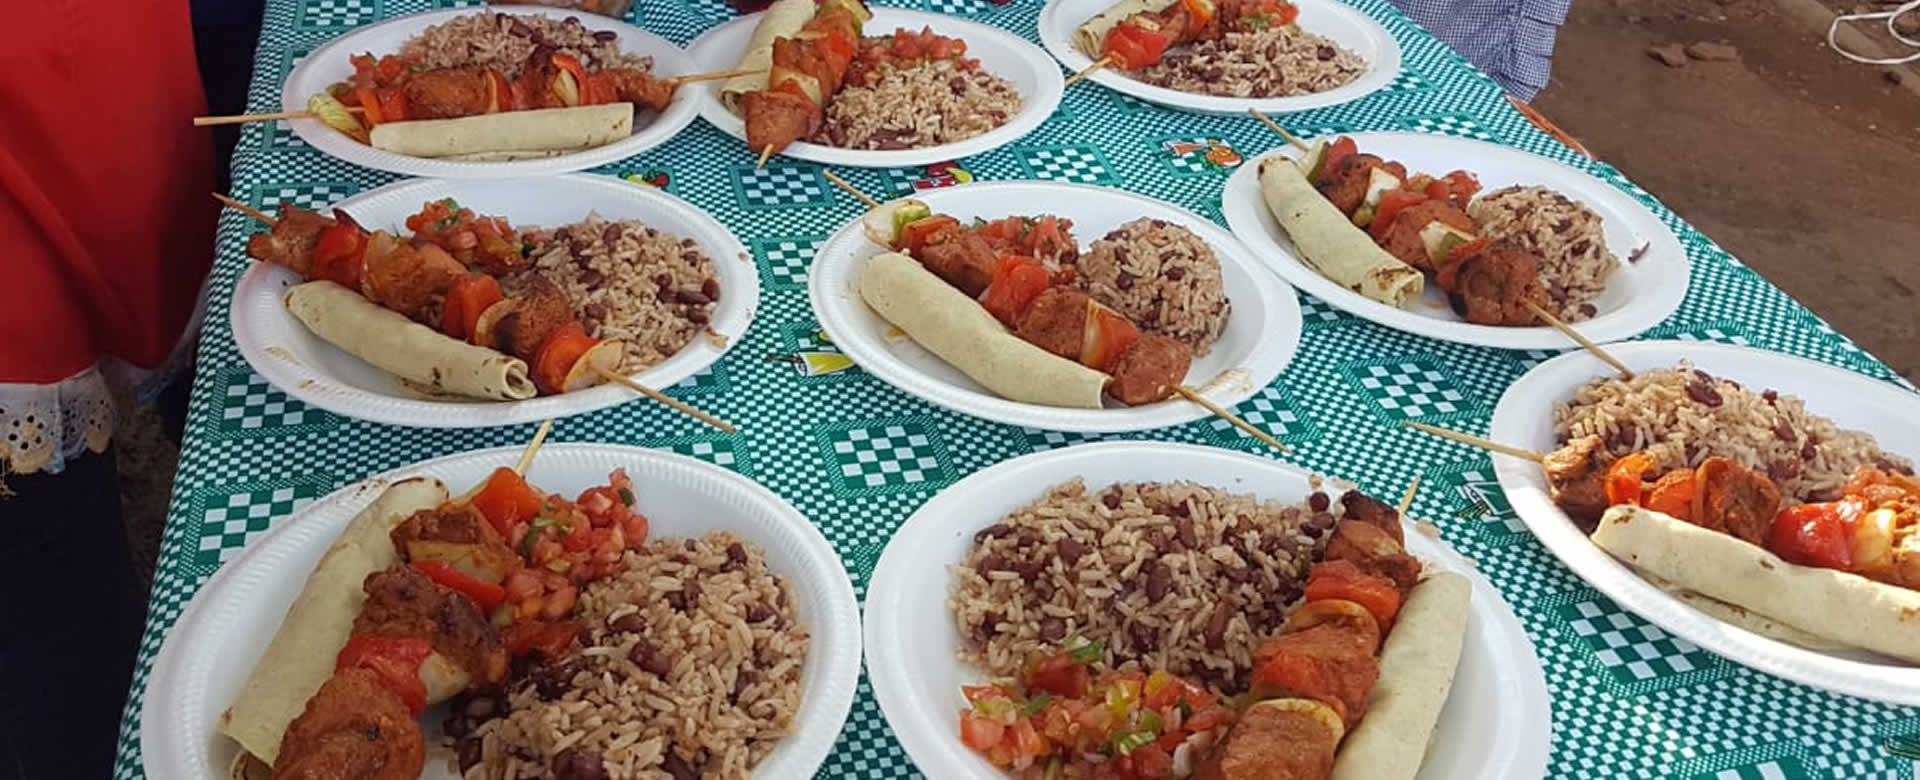 INATEC imparte cursos de cocina básica a las familias de Somoto